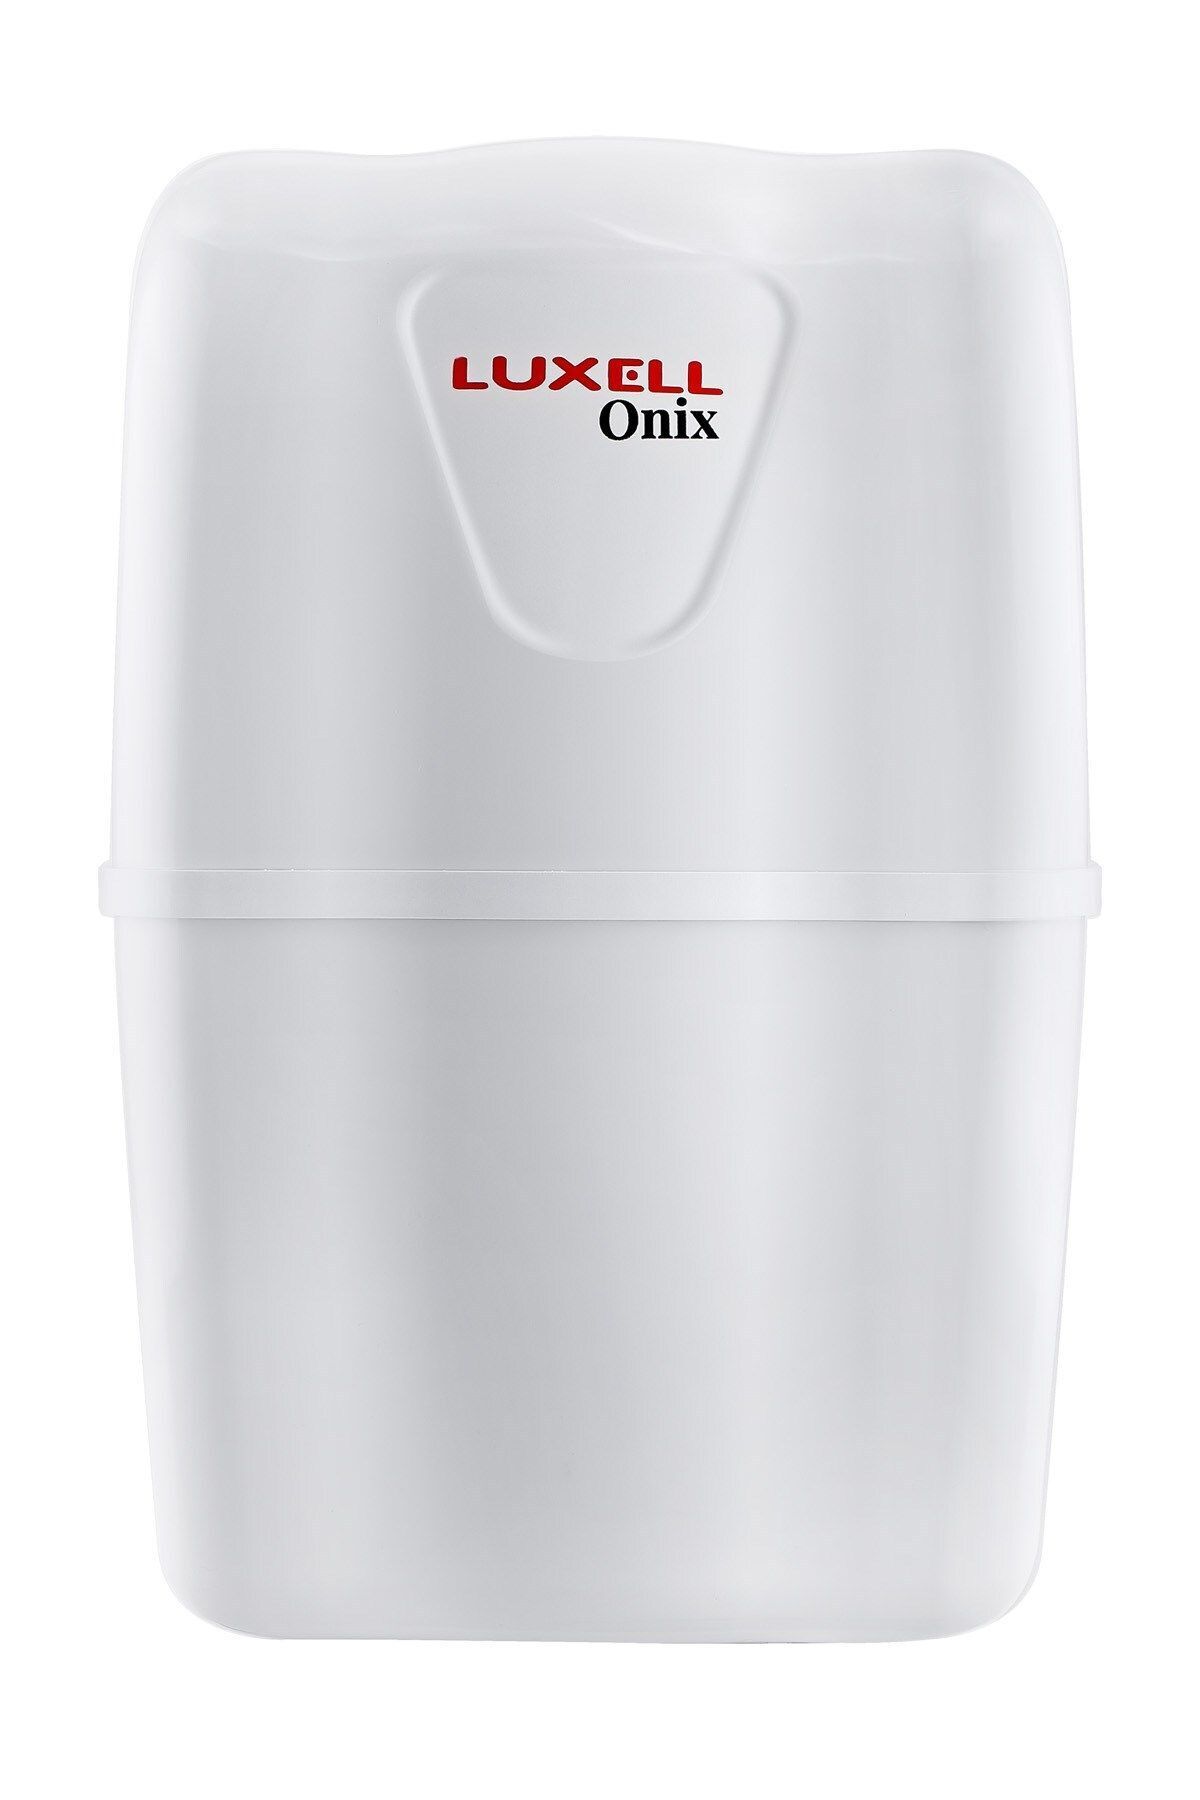 Luxell Lxs-po Onix Ro Kompakt Pompasız Su Arıtma Cihazı new product